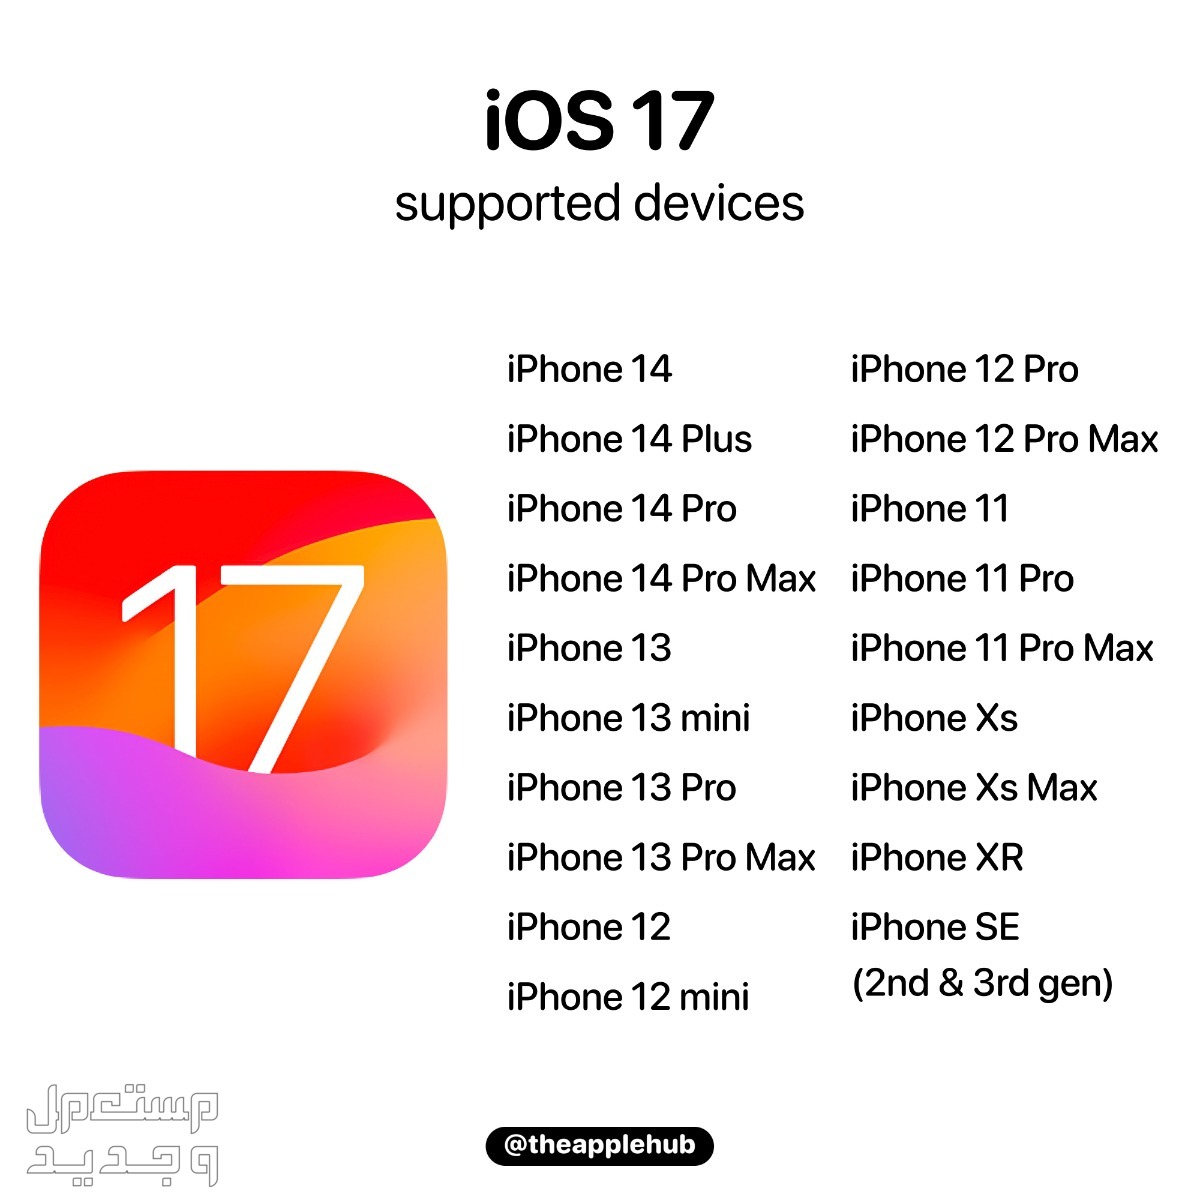 نظام iOS 17 لهواتف ايفون بمميزات جديدة تعرف عليها في المغرب